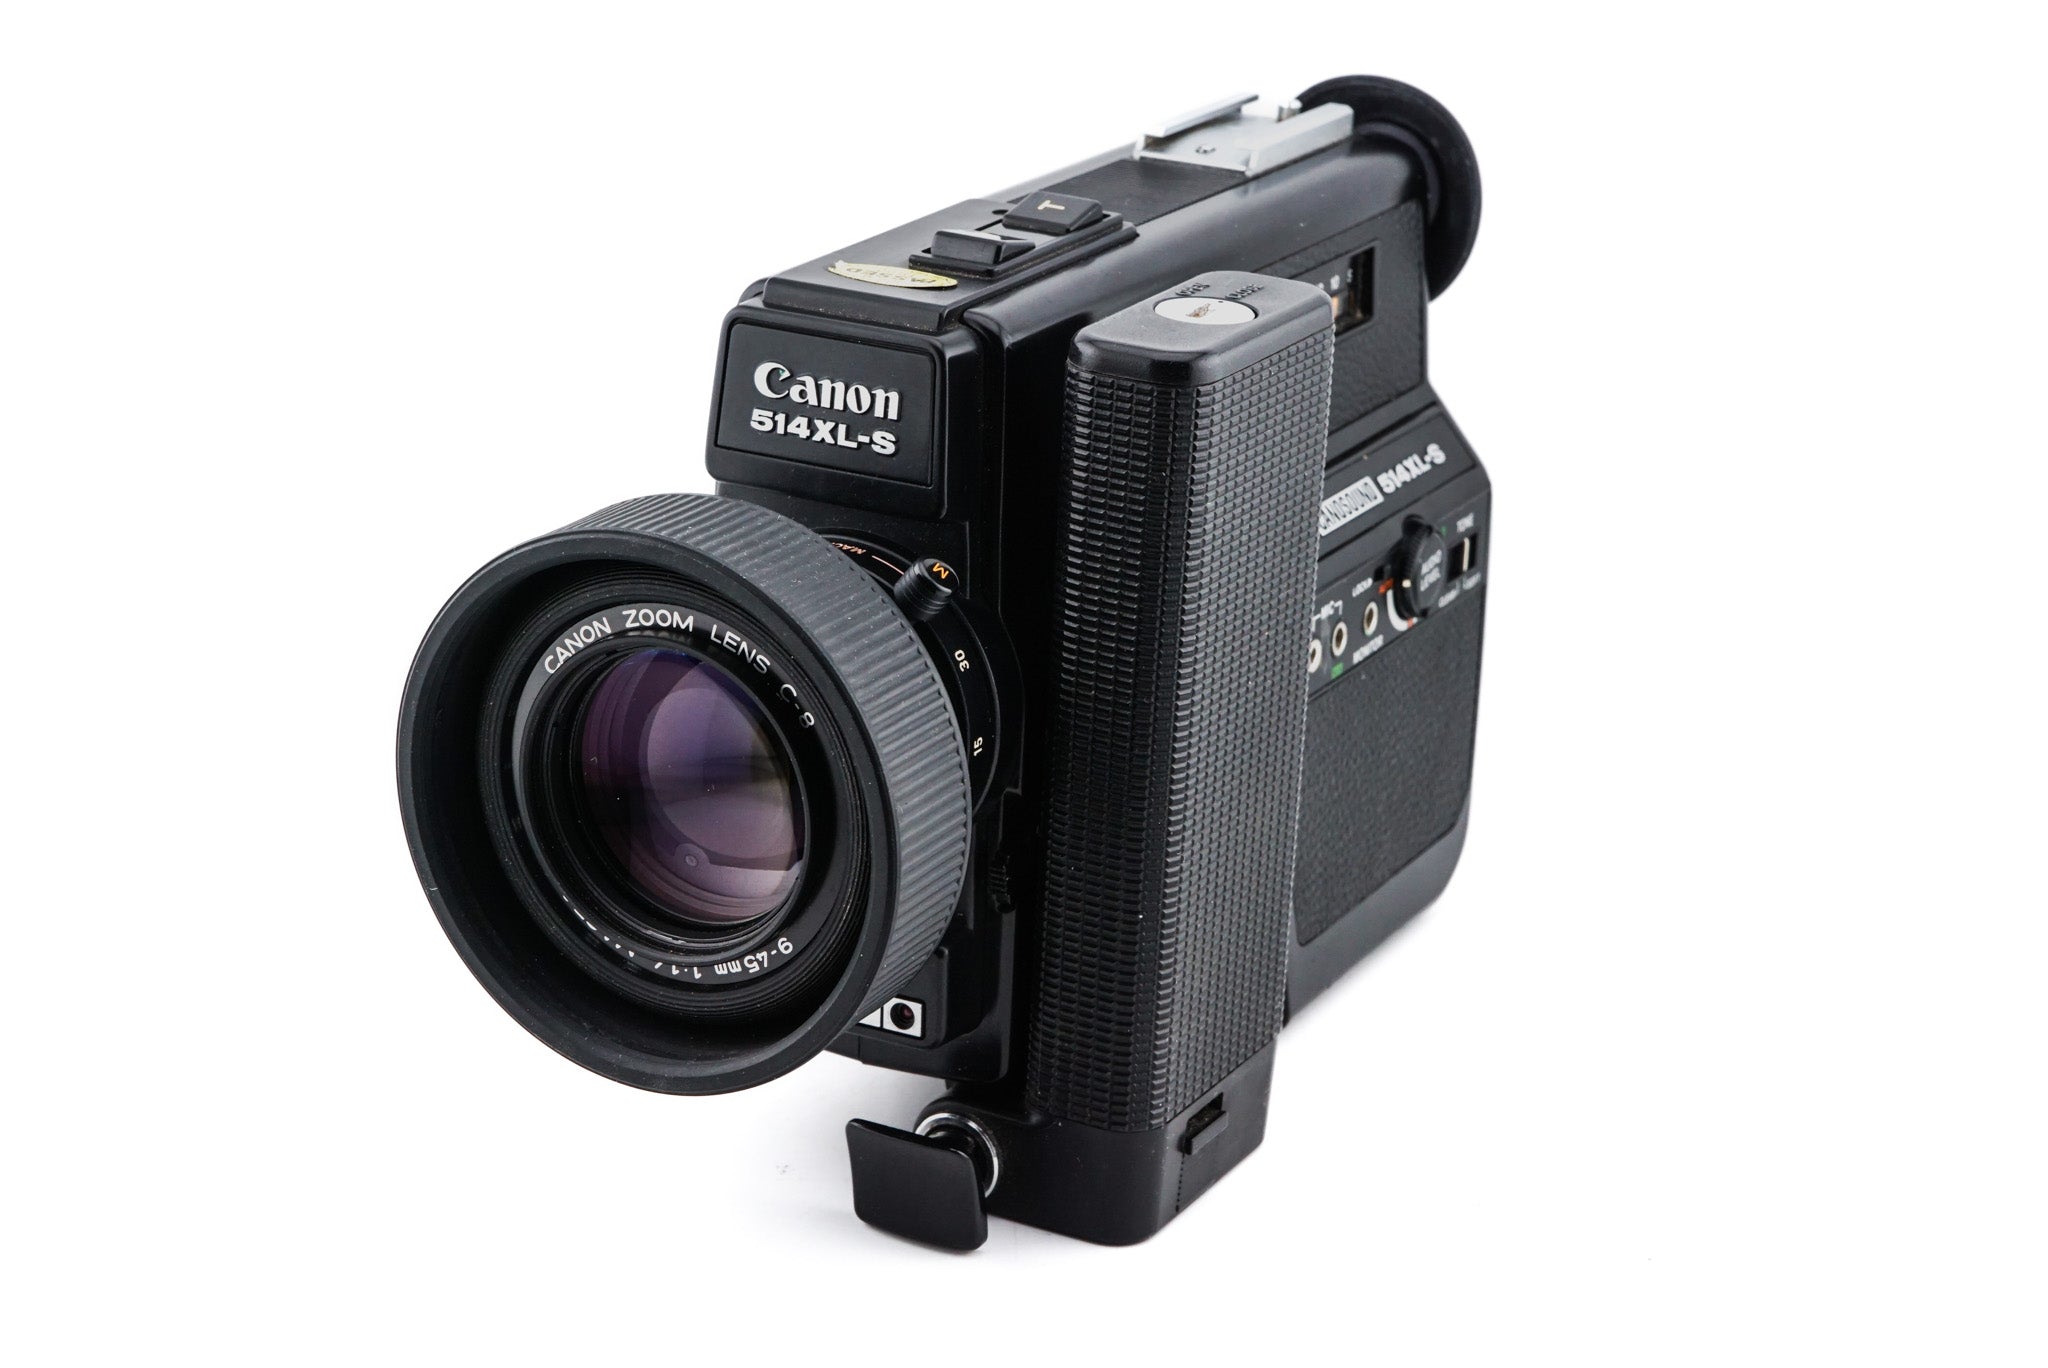 Canon 514XL-S Canosound Super 8 8mm Movie Film Camera (Untested, No power)